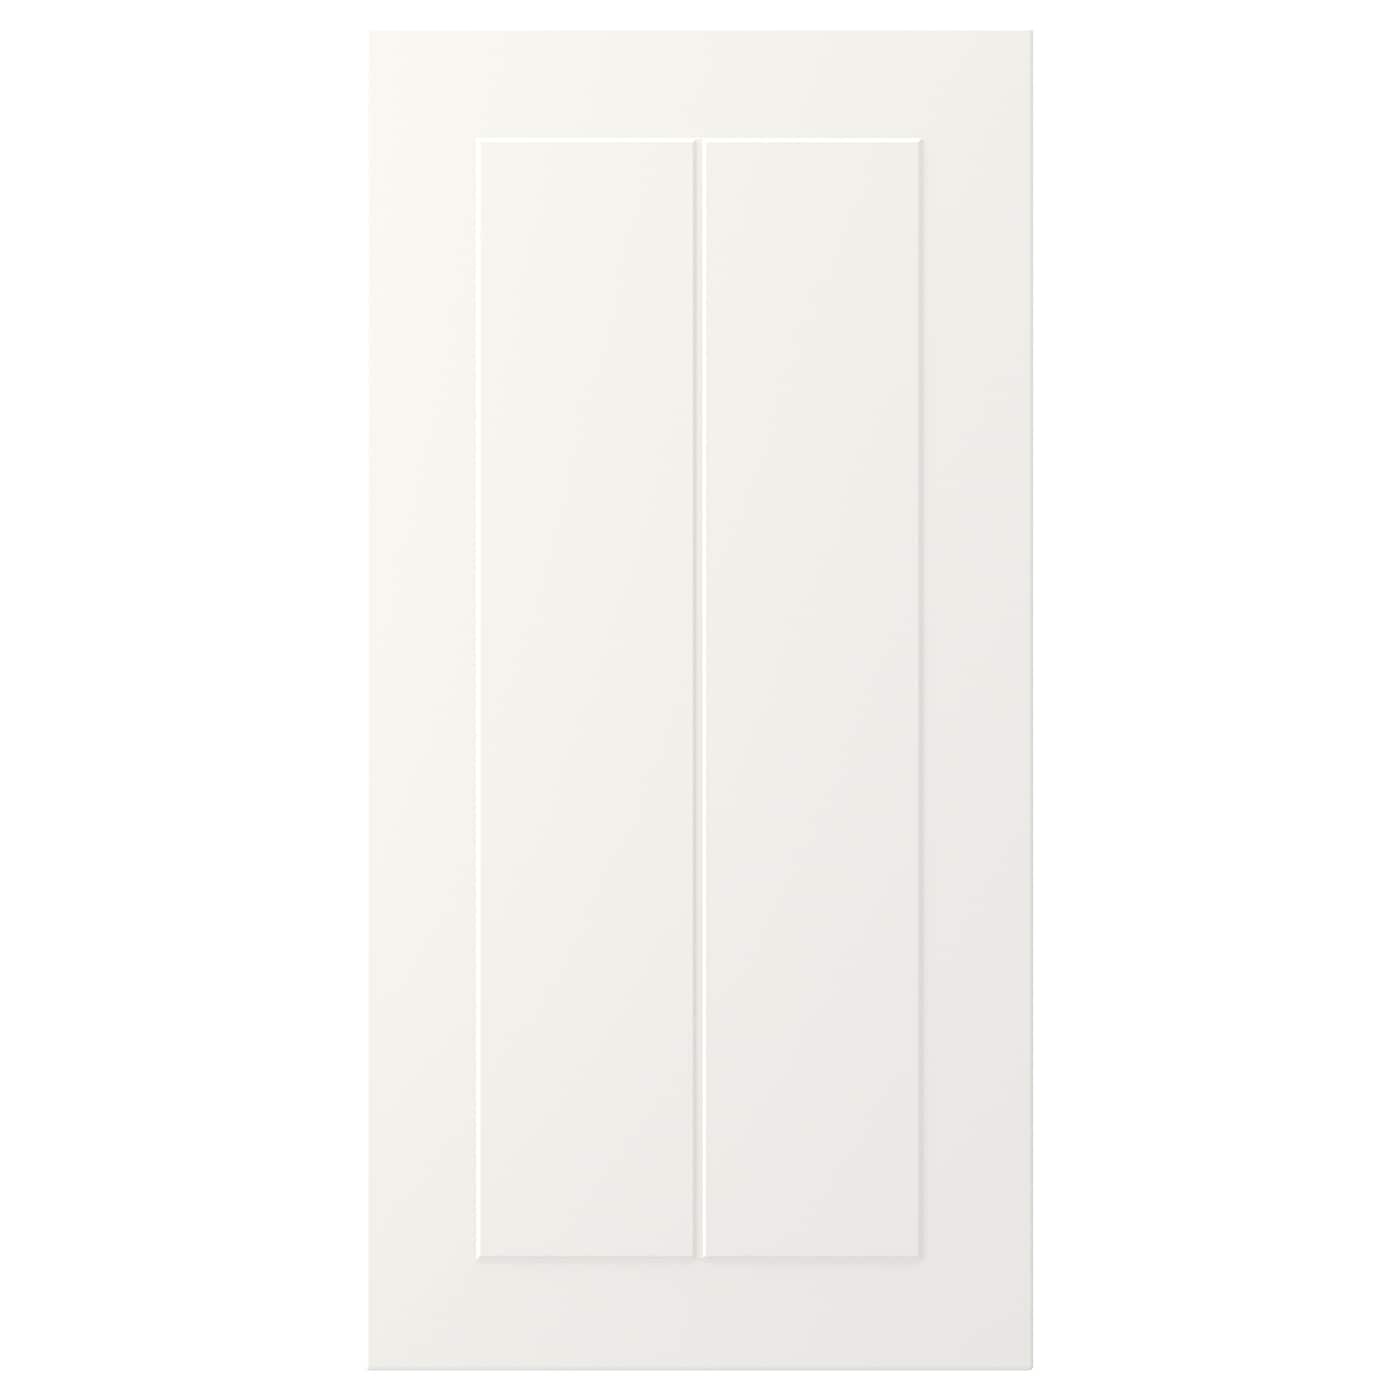 Дверца - IKEA STENSUND, 60х30 см, белый, СТЕНСУНД ИКЕА